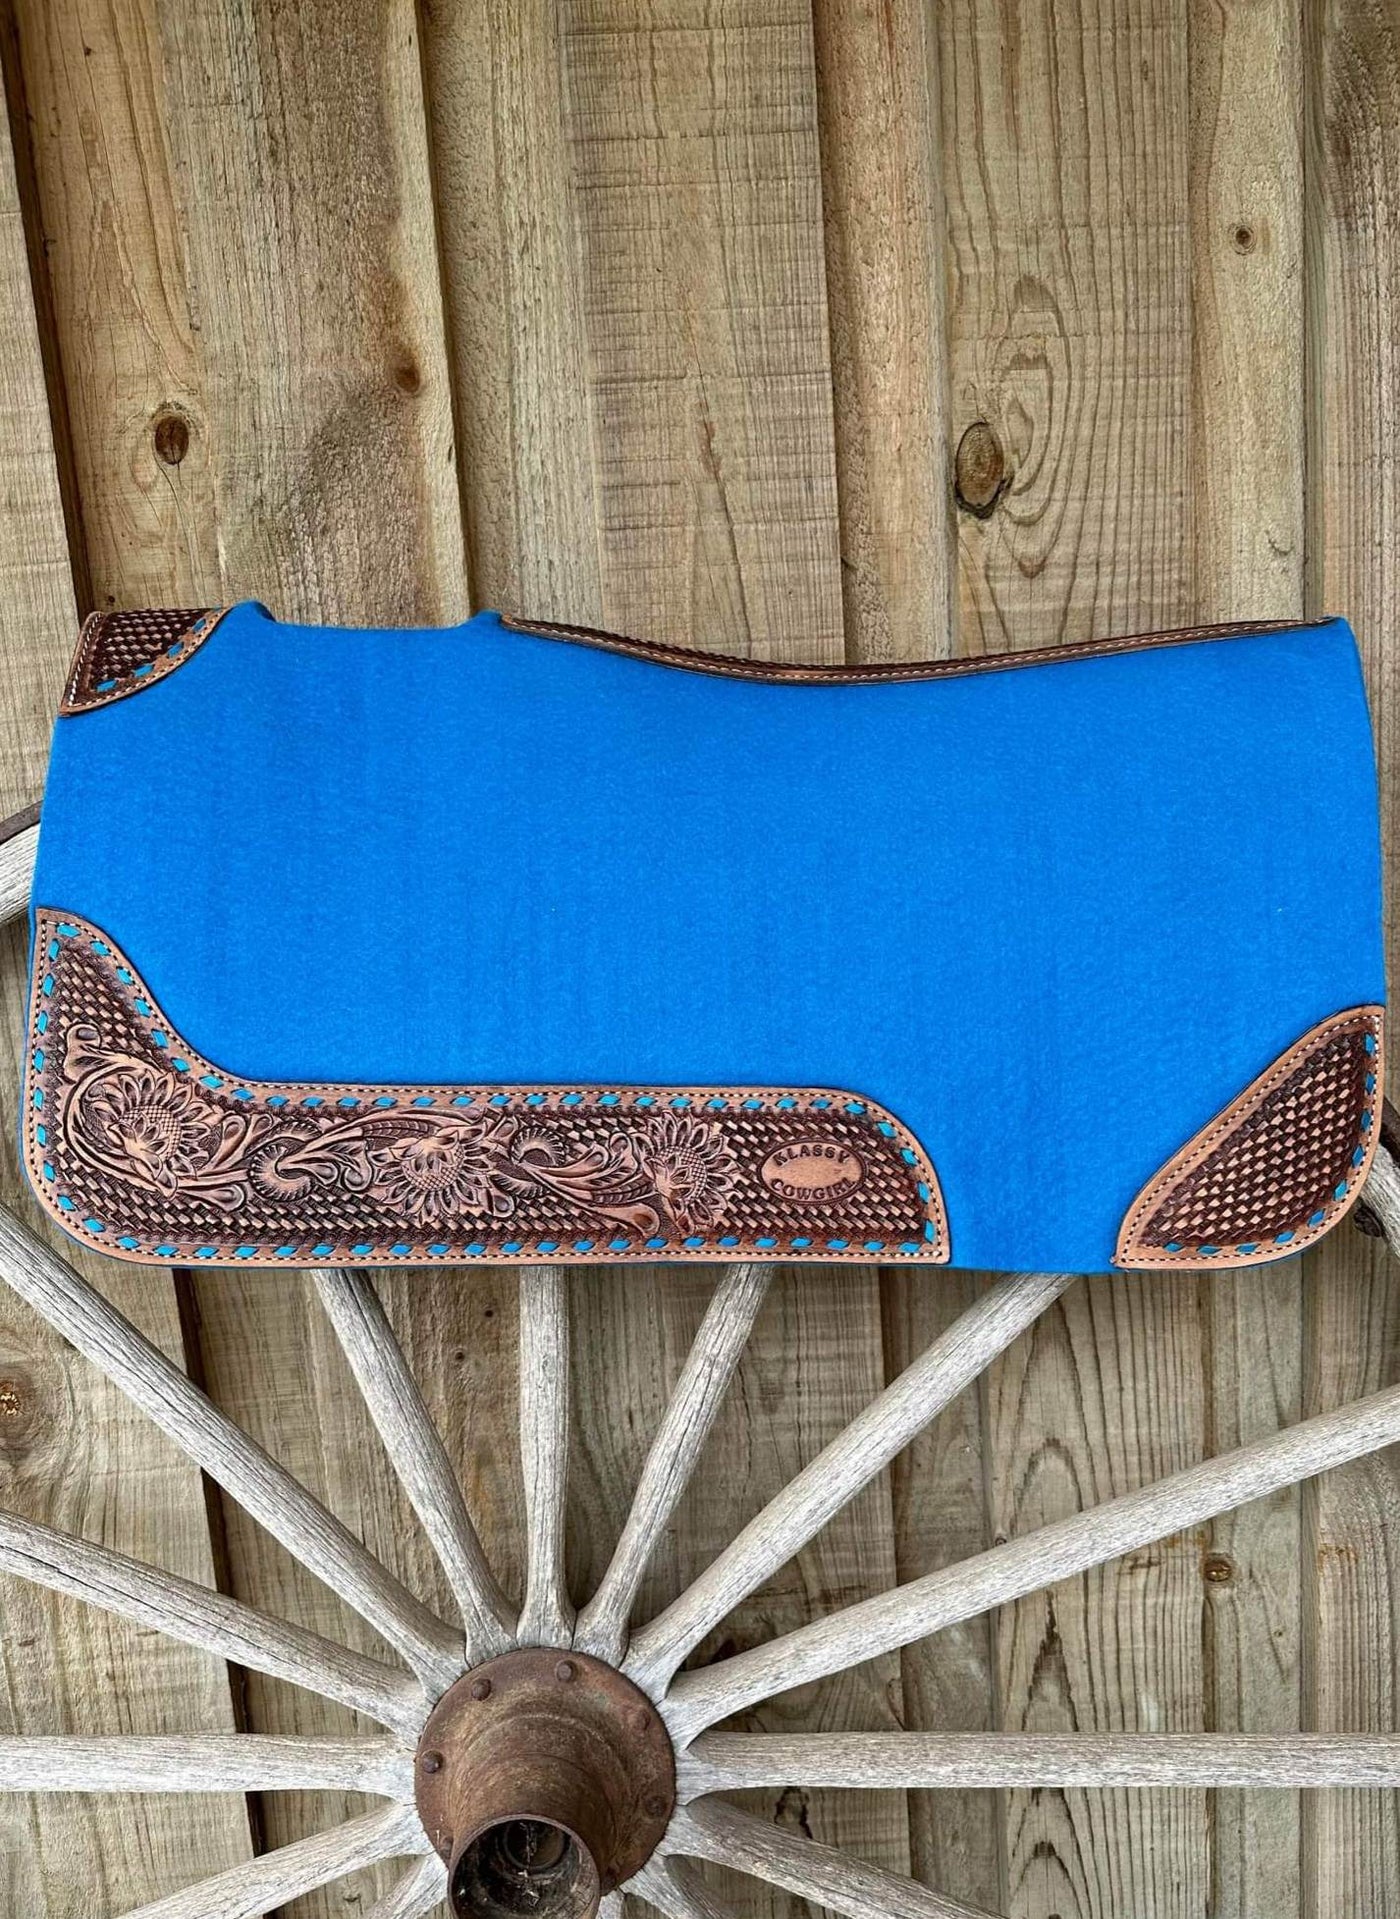 Western Klassy Cowgirl  28x30  Barrel  Style 1”  Royal Blue felt saddle pad